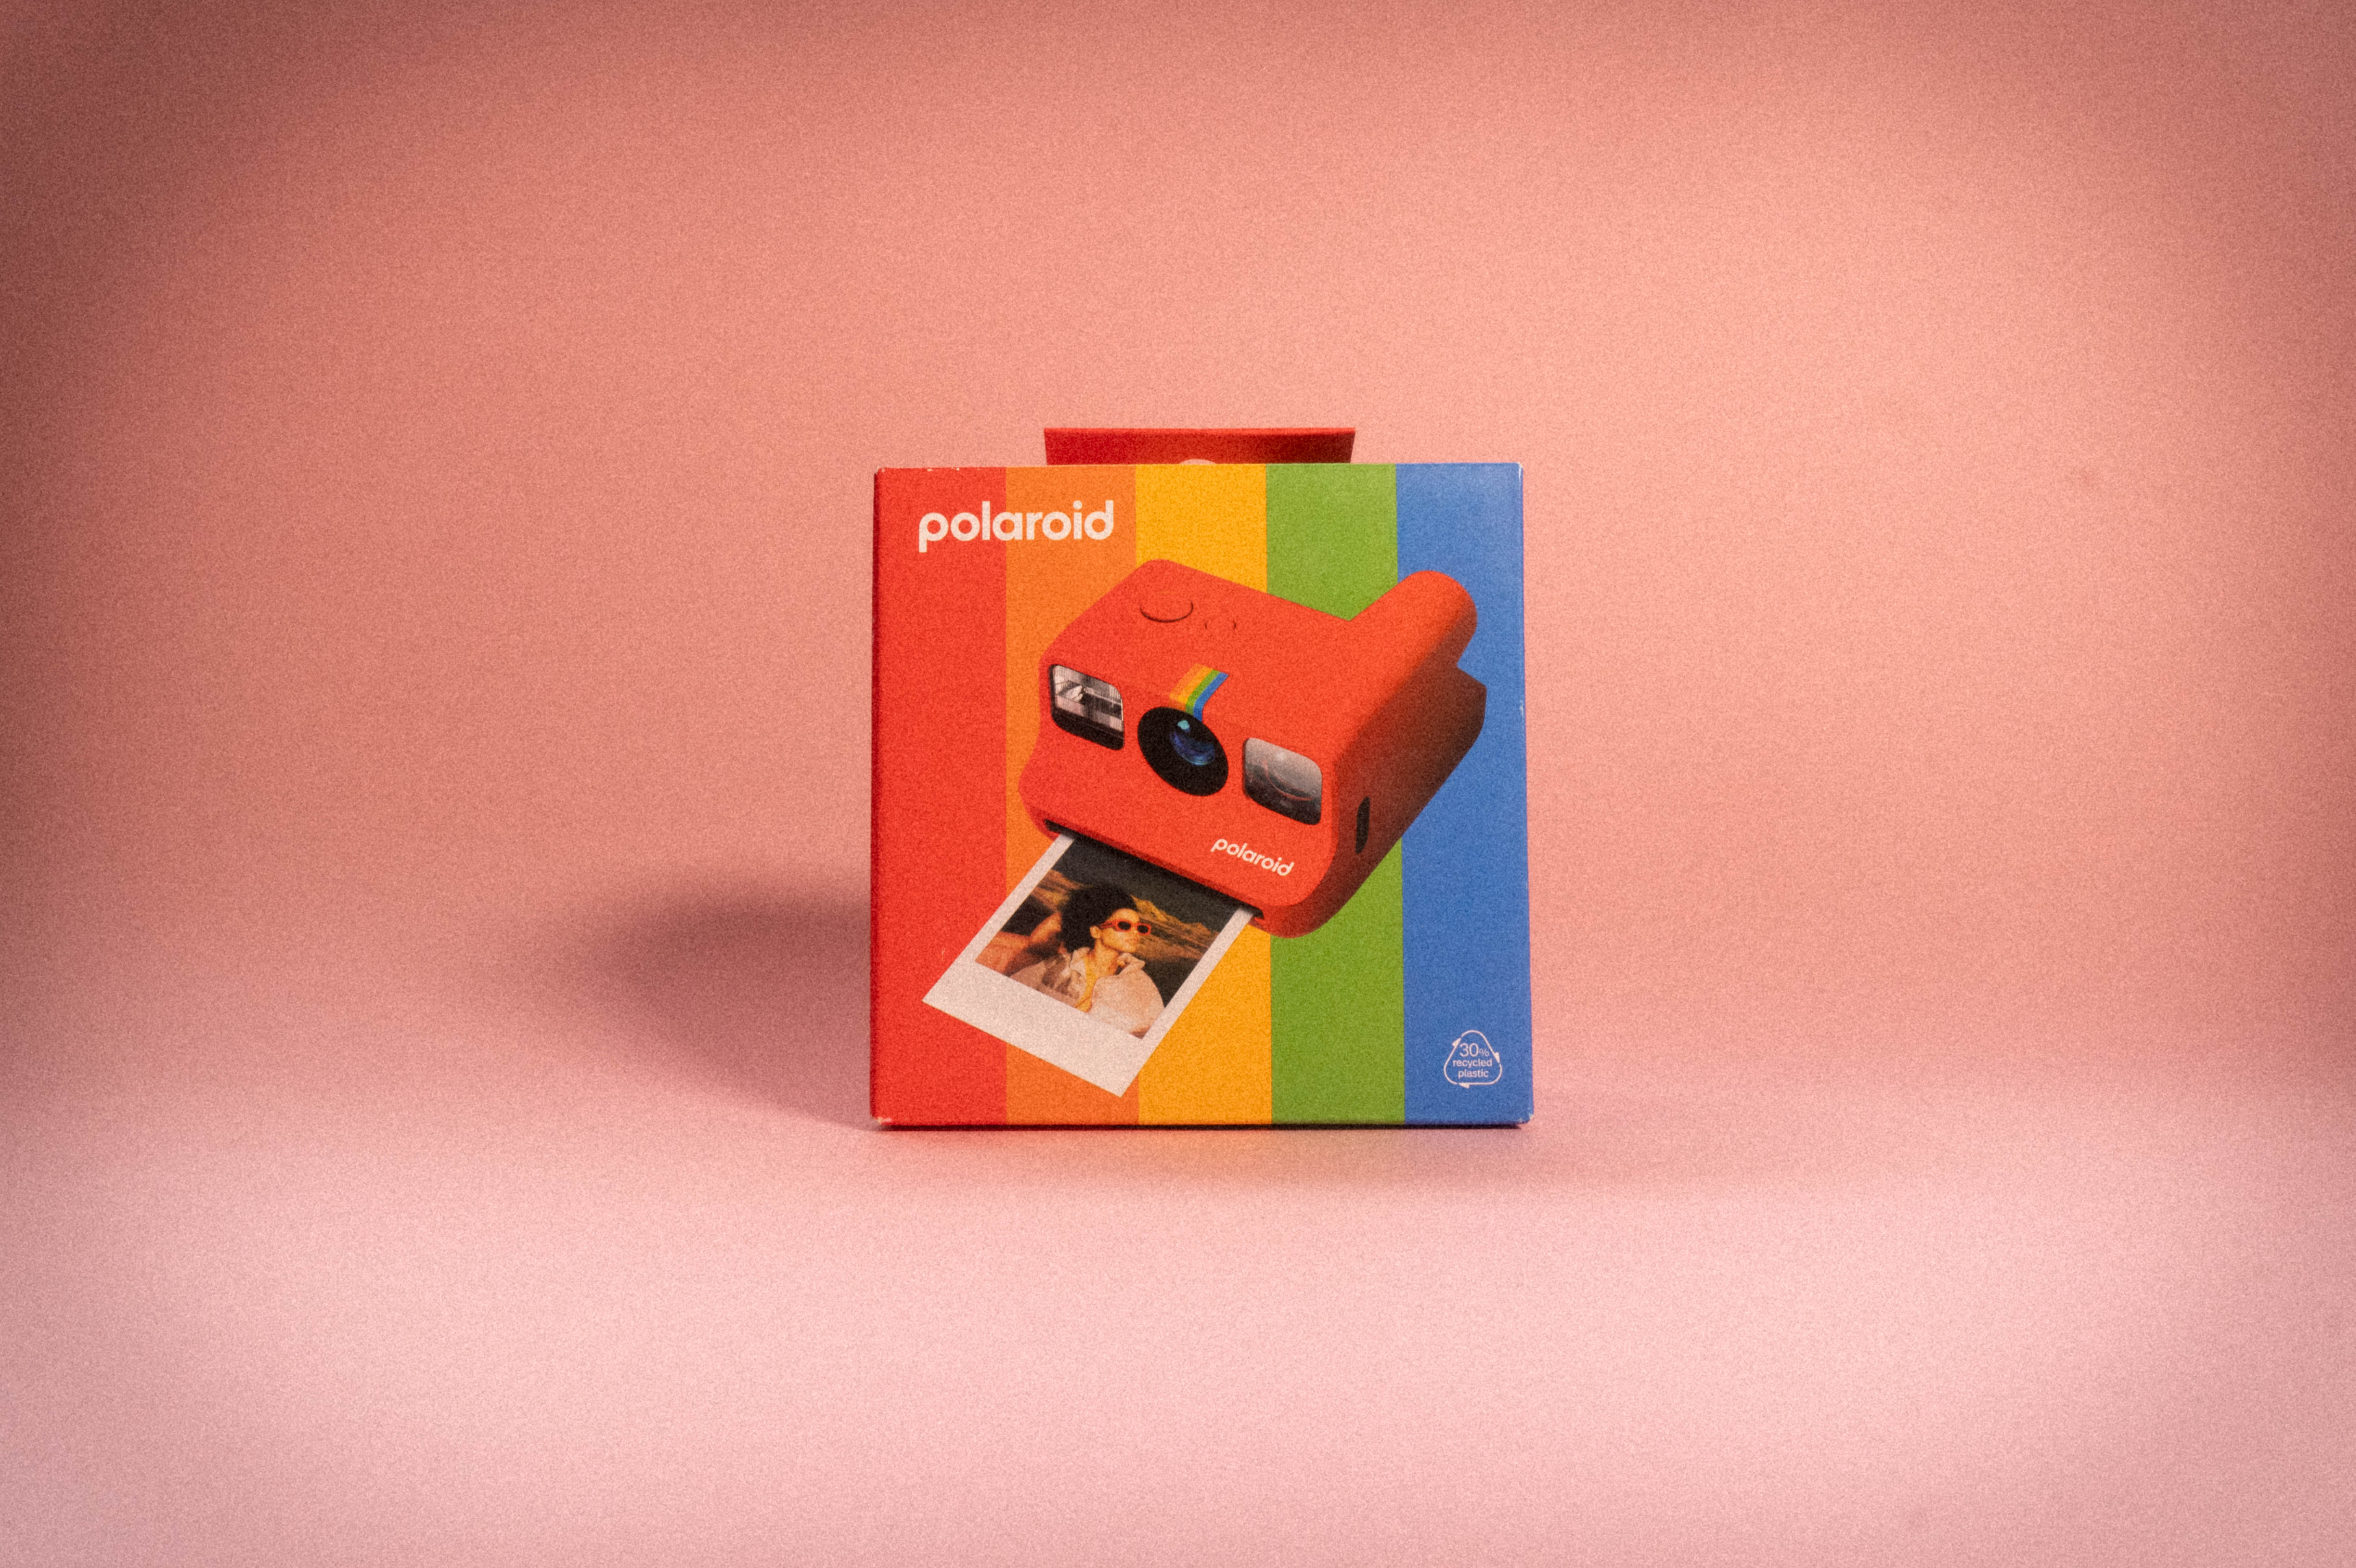 Cámara de Película Instantánea Polaroid Go Roja